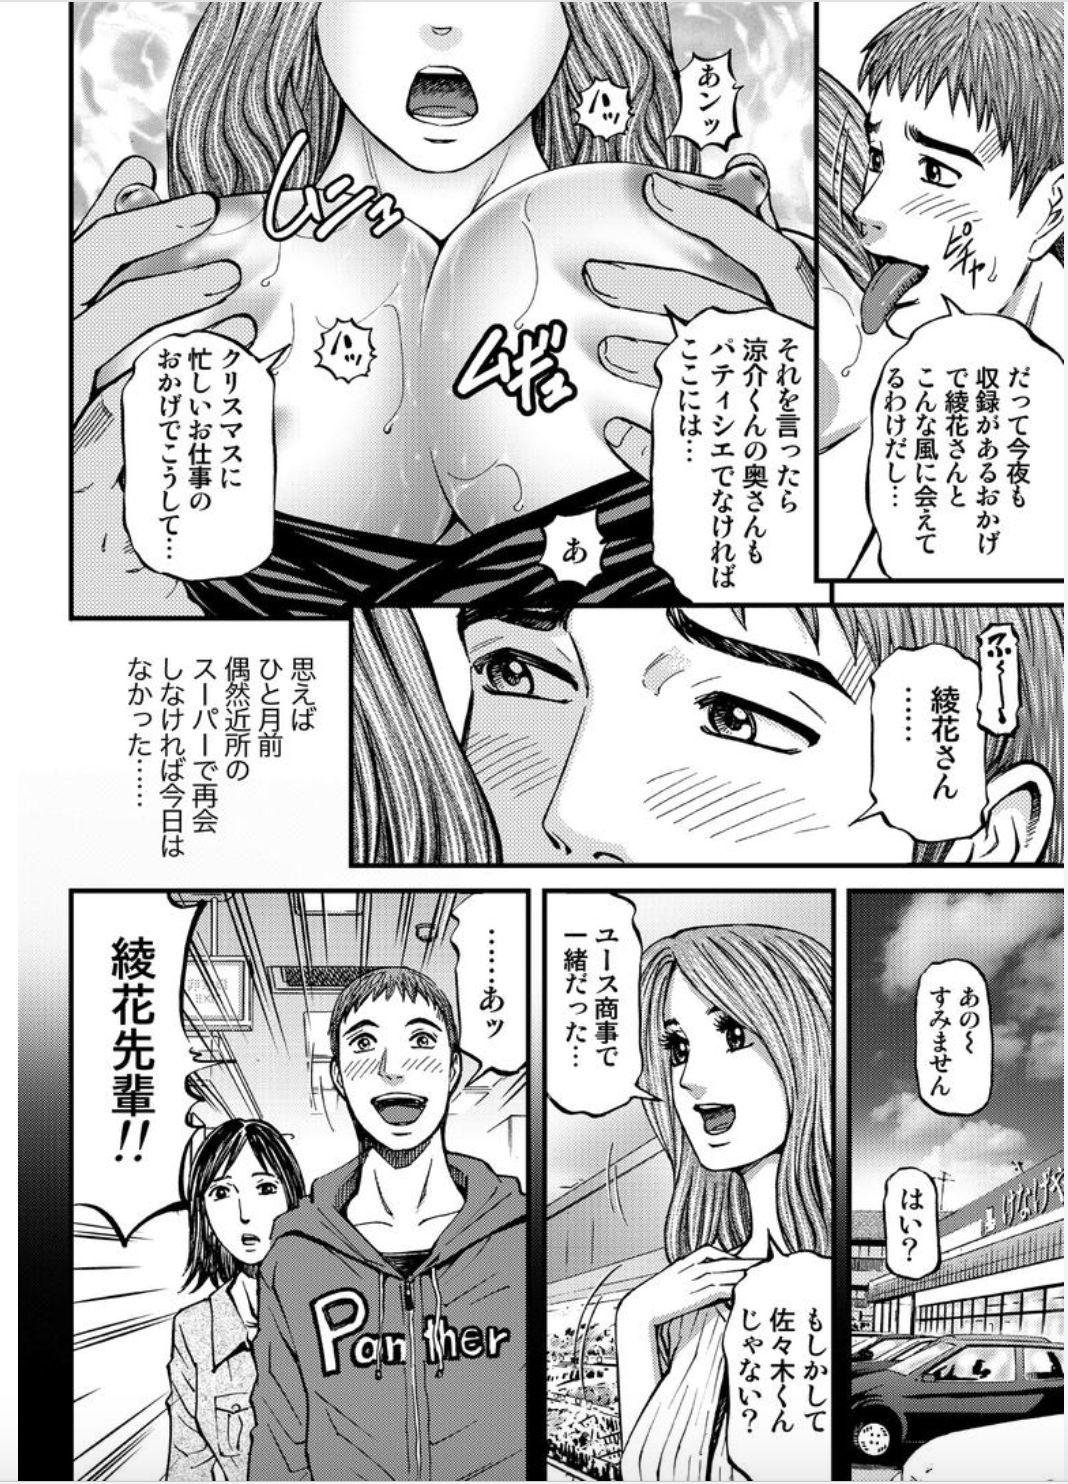 Shemale Onna-tachi ga Iku Toki... Ero Drama Vol. 4 Seiya Dominatrix - Page 6